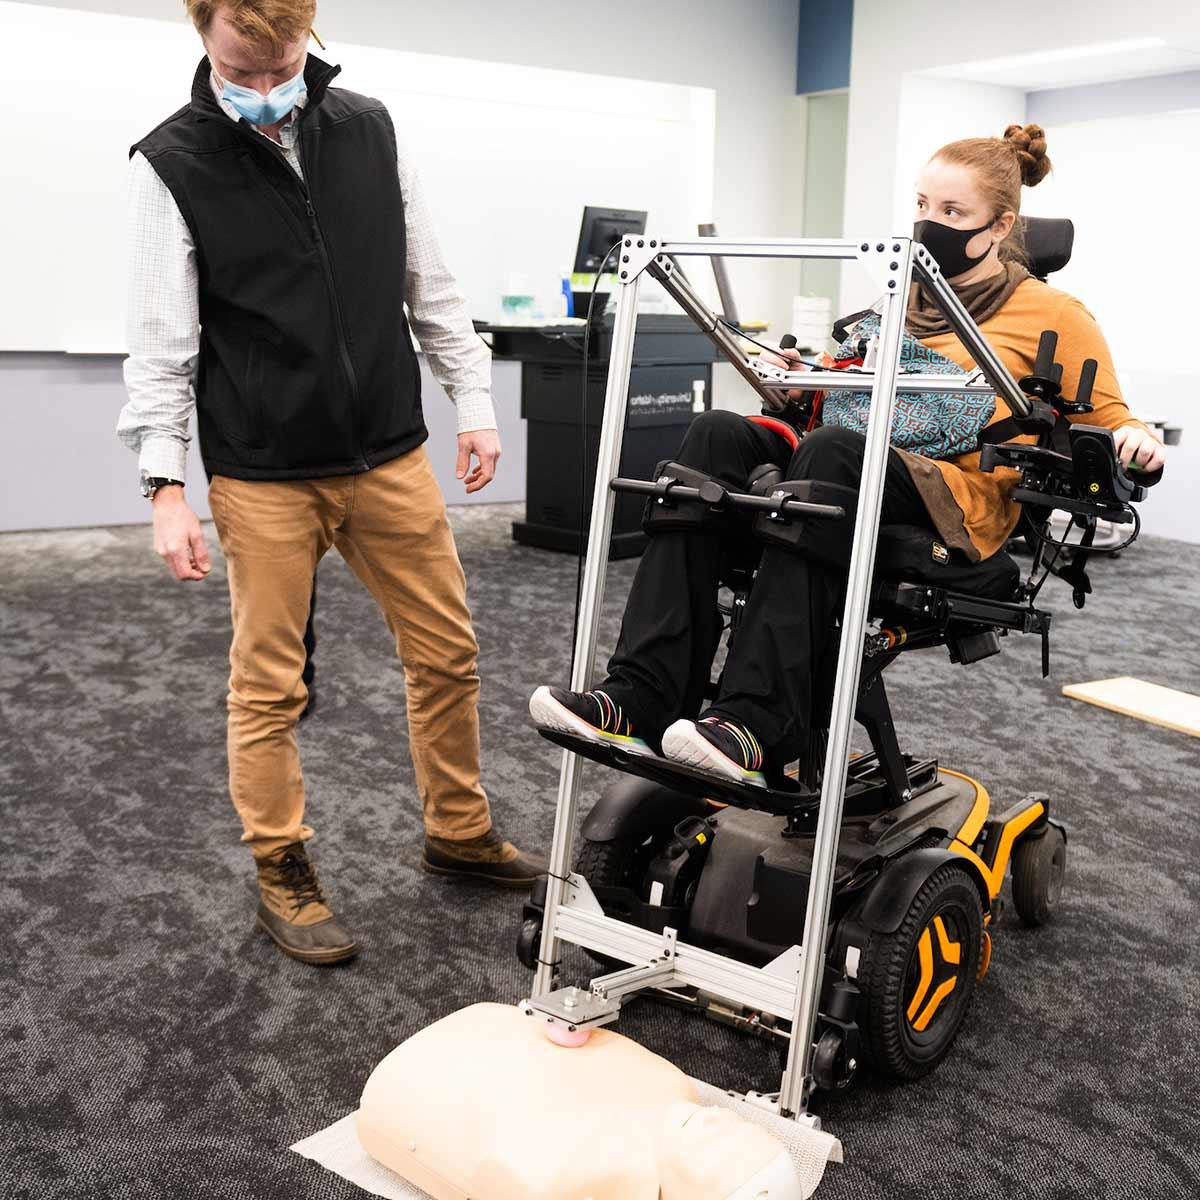 工科学生帮助坐在轮椅上的学生使用辅助心肺复苏装置, 哪一个使用杠杆动作来增加力量和实现必要的胸部压迫.